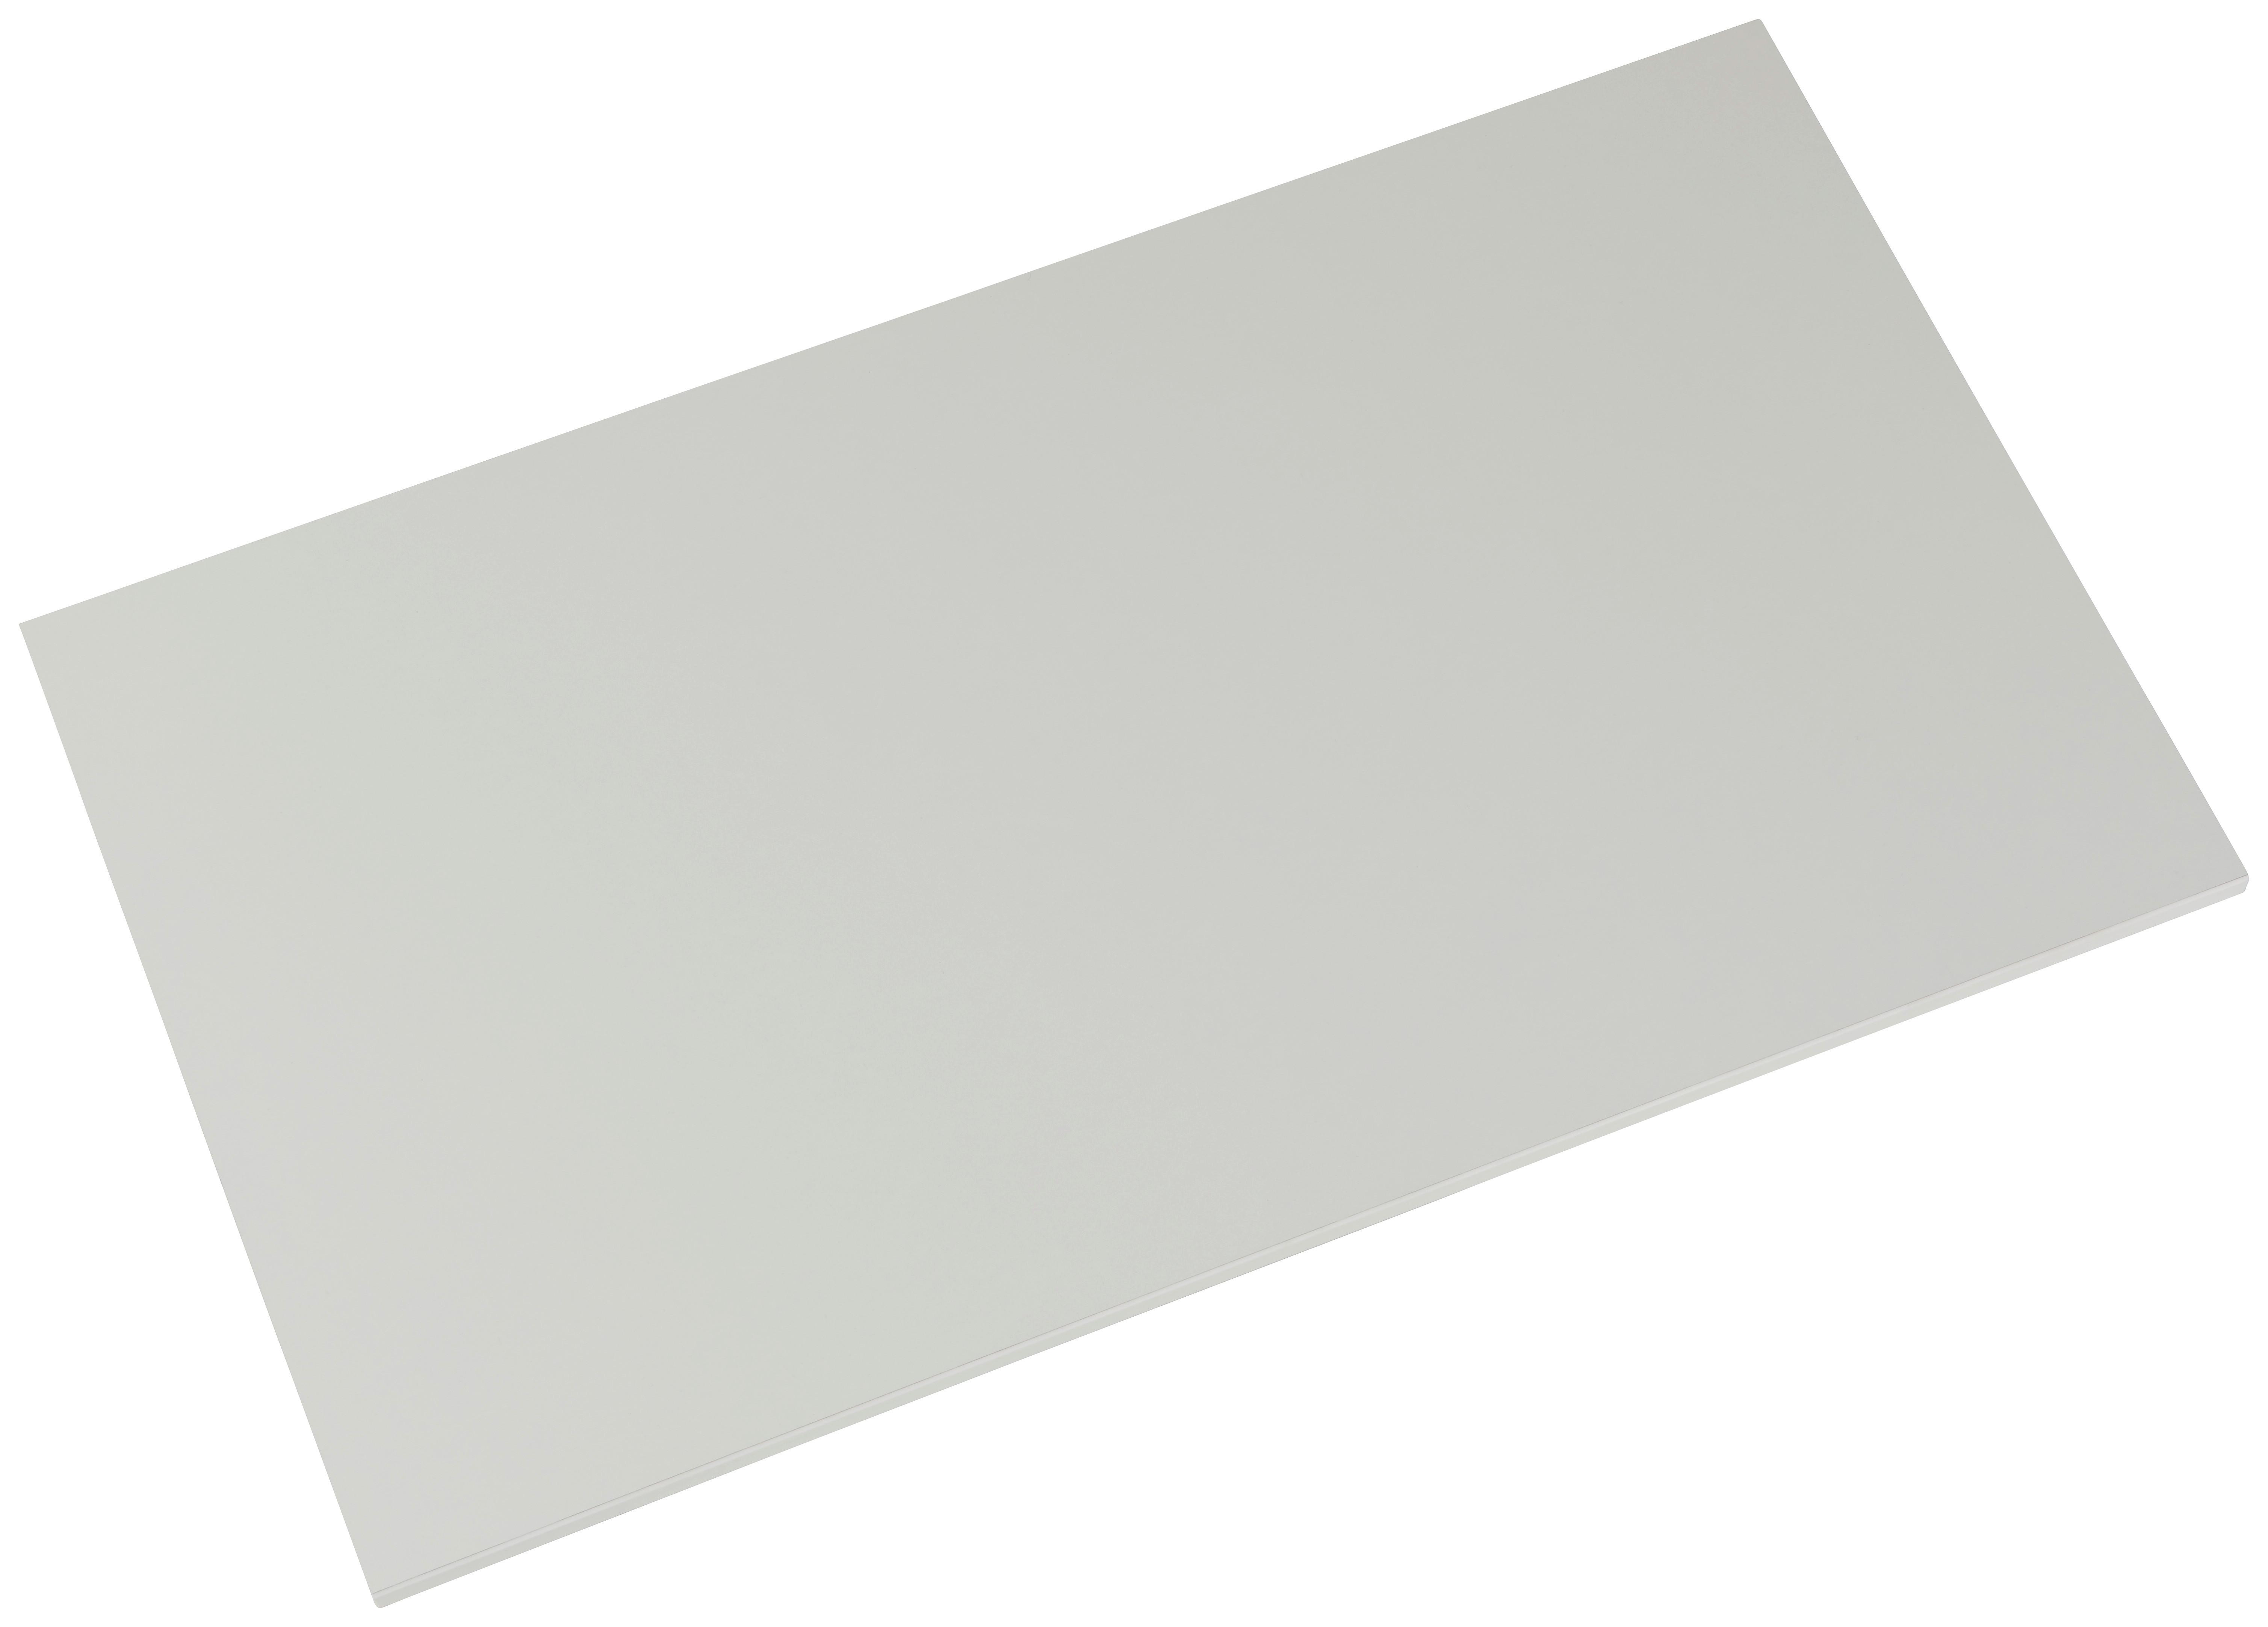 Einlegebodenset in Weiß - Weiß, ROMANTIK / LANDHAUS, Holzwerkstoff (96/2/56cm) - Based